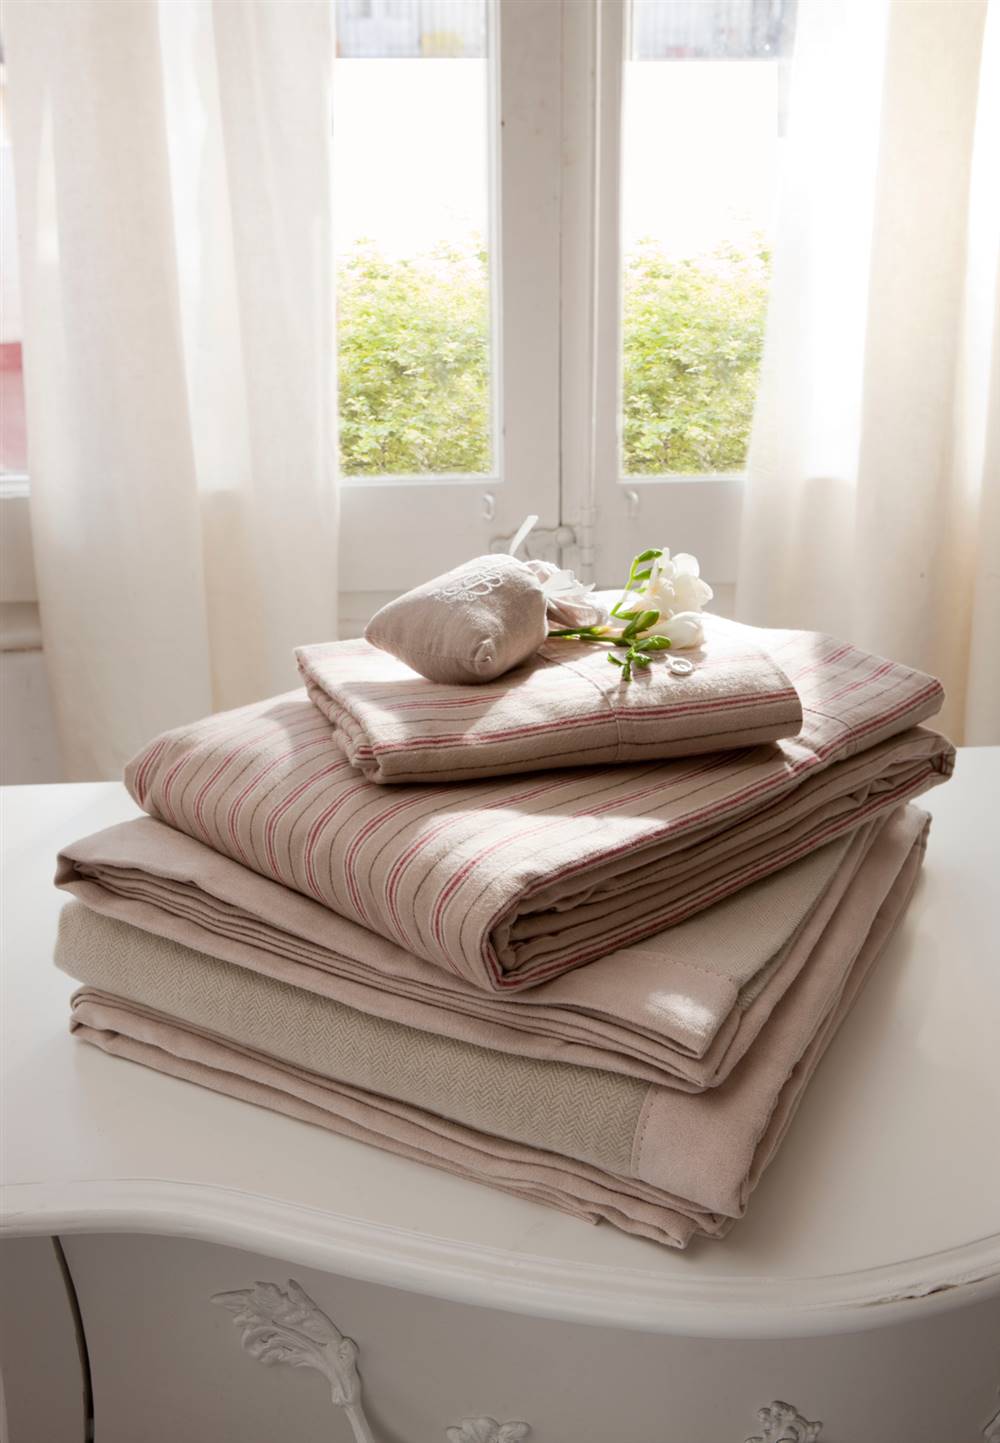 Detalle de sábanas y ropa de cama en tonos rosa y gris sobre consola  312810